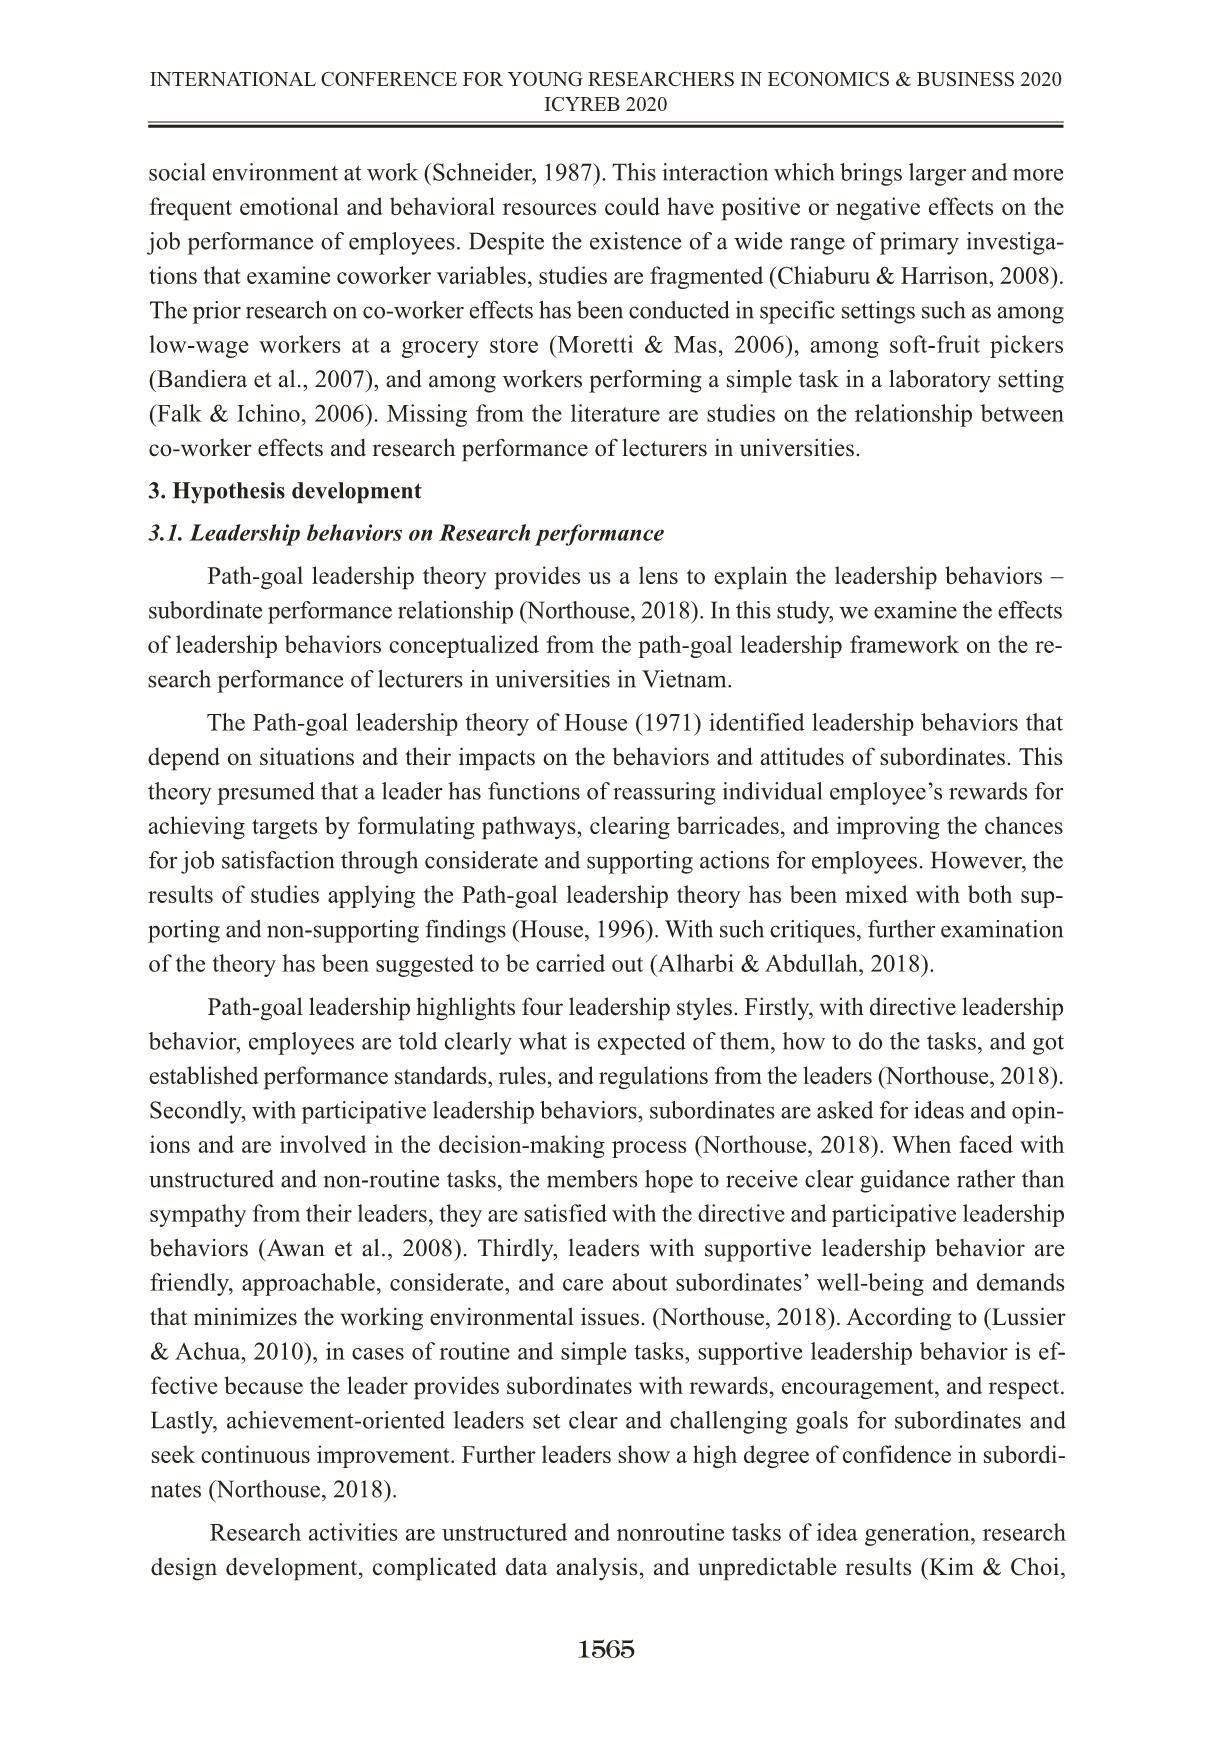 Tác động của các yếu tố cấp bộ môn đến hiệu quả nghiên cứu khoa học của giảng viên: Nghiên cứu thực nghiệm tại Việt Nam trang 5